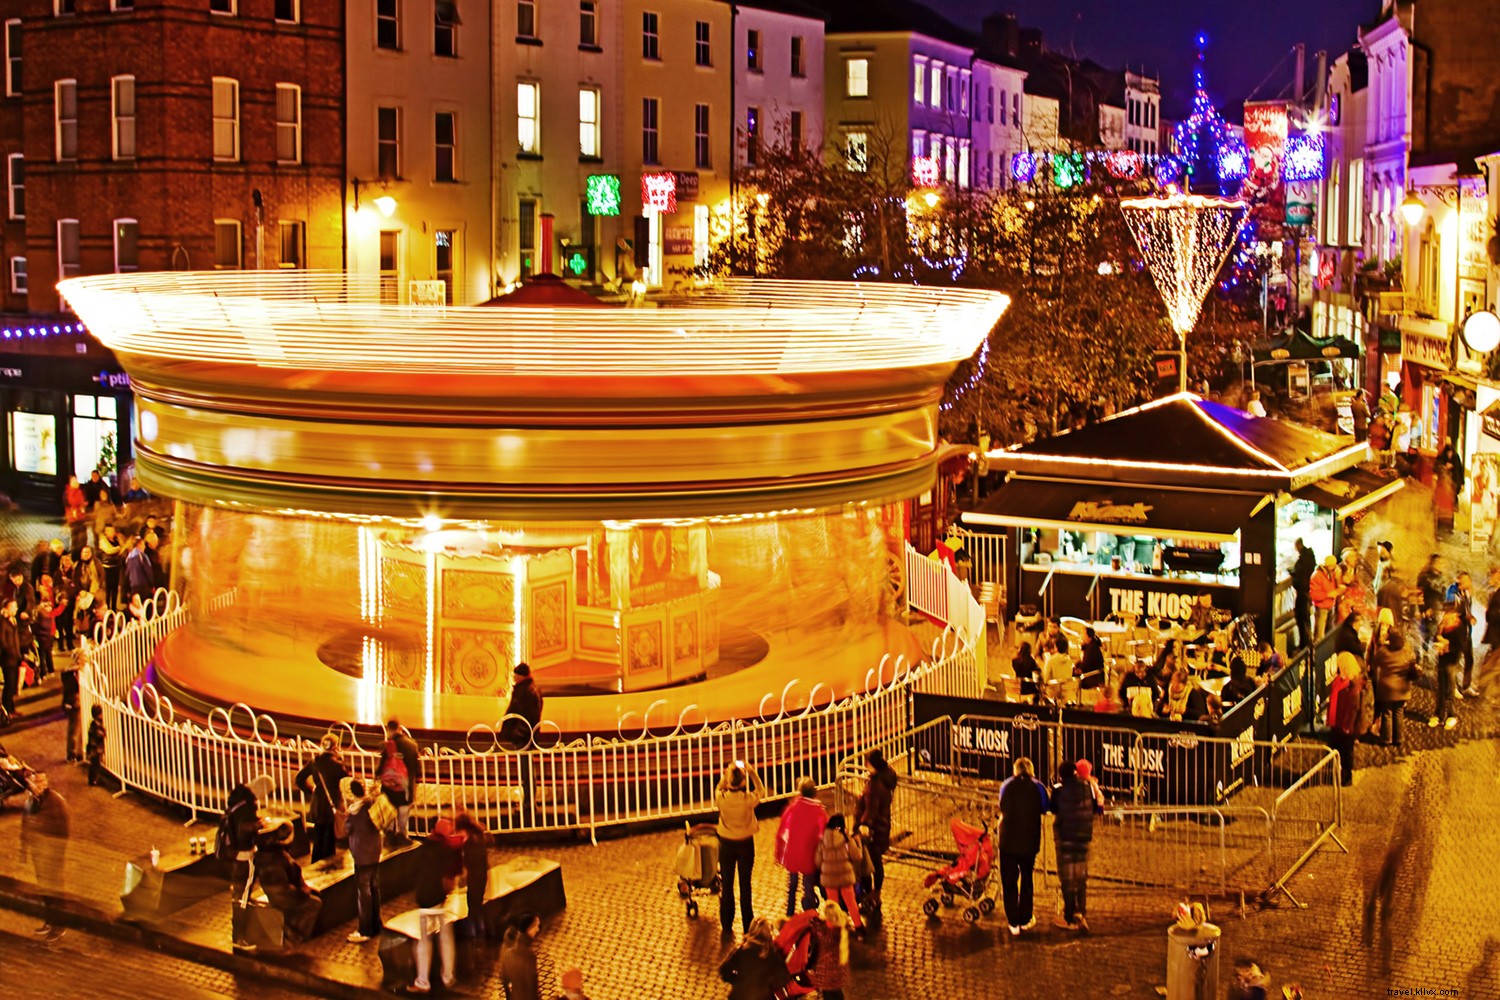 Comment l Irlande fait la saison des festivals comme nulle part ailleurs sur Terre 